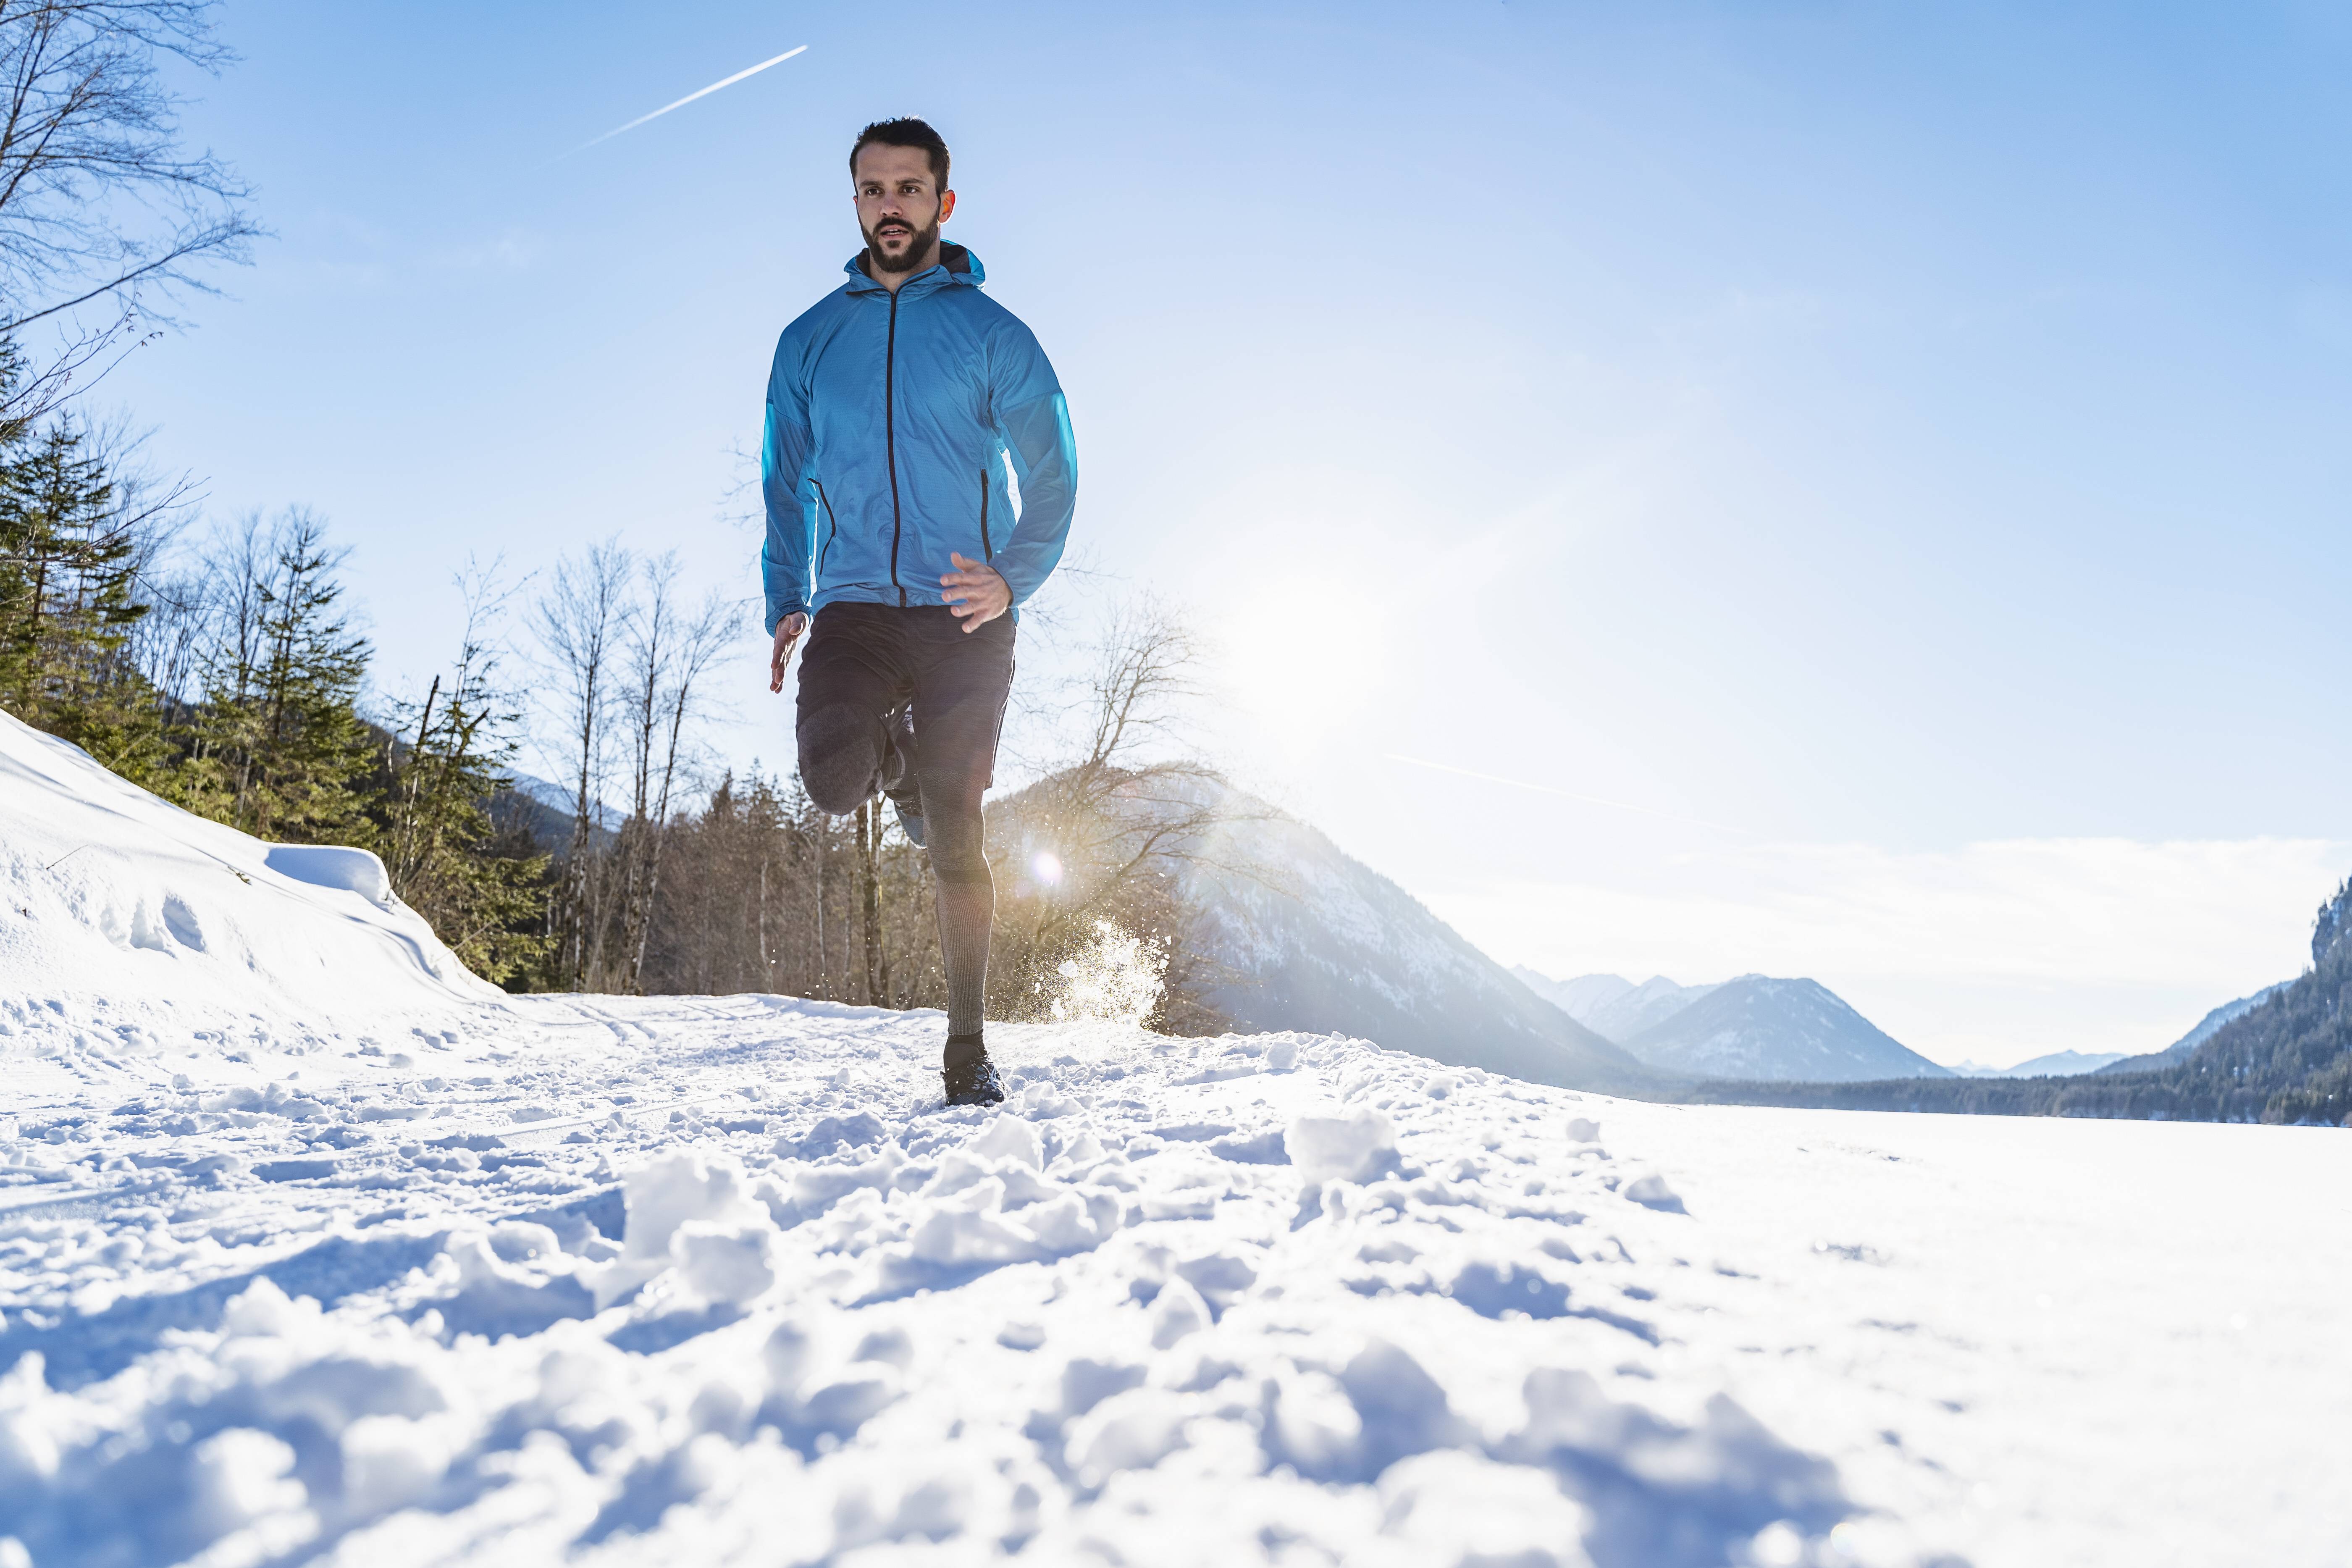 Laufen im Winter: Tipps vom Running-Experten Volker Haußmann